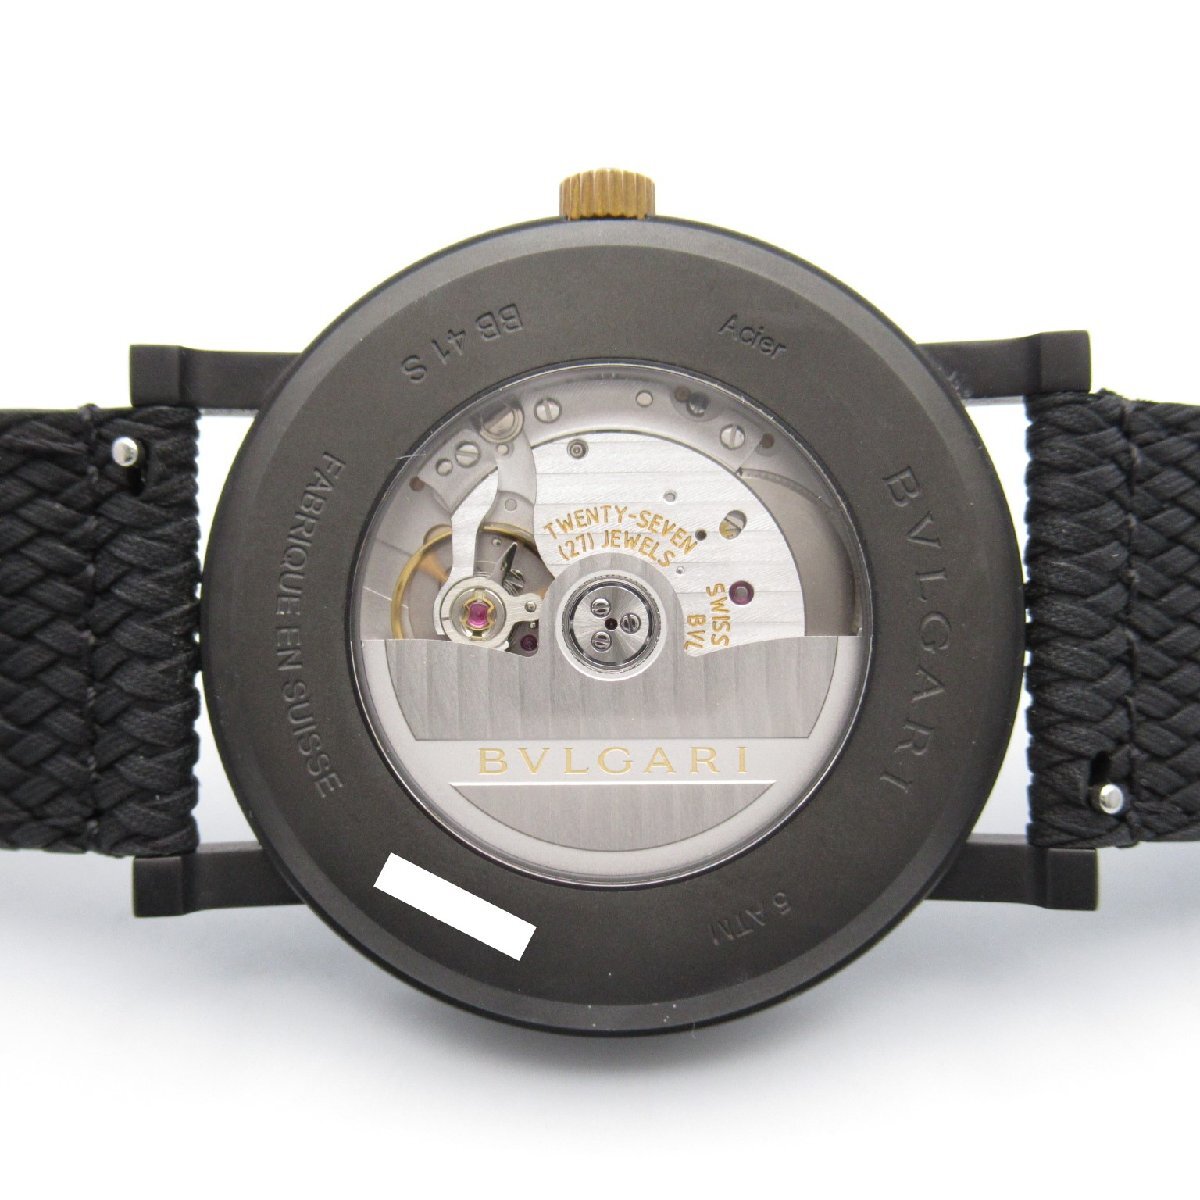  BVLGARY BVLGARY BVLGARY Solotempo бренд off BVLGARI нержавеющая сталь наручные часы SS/ Raver б/у мужской 